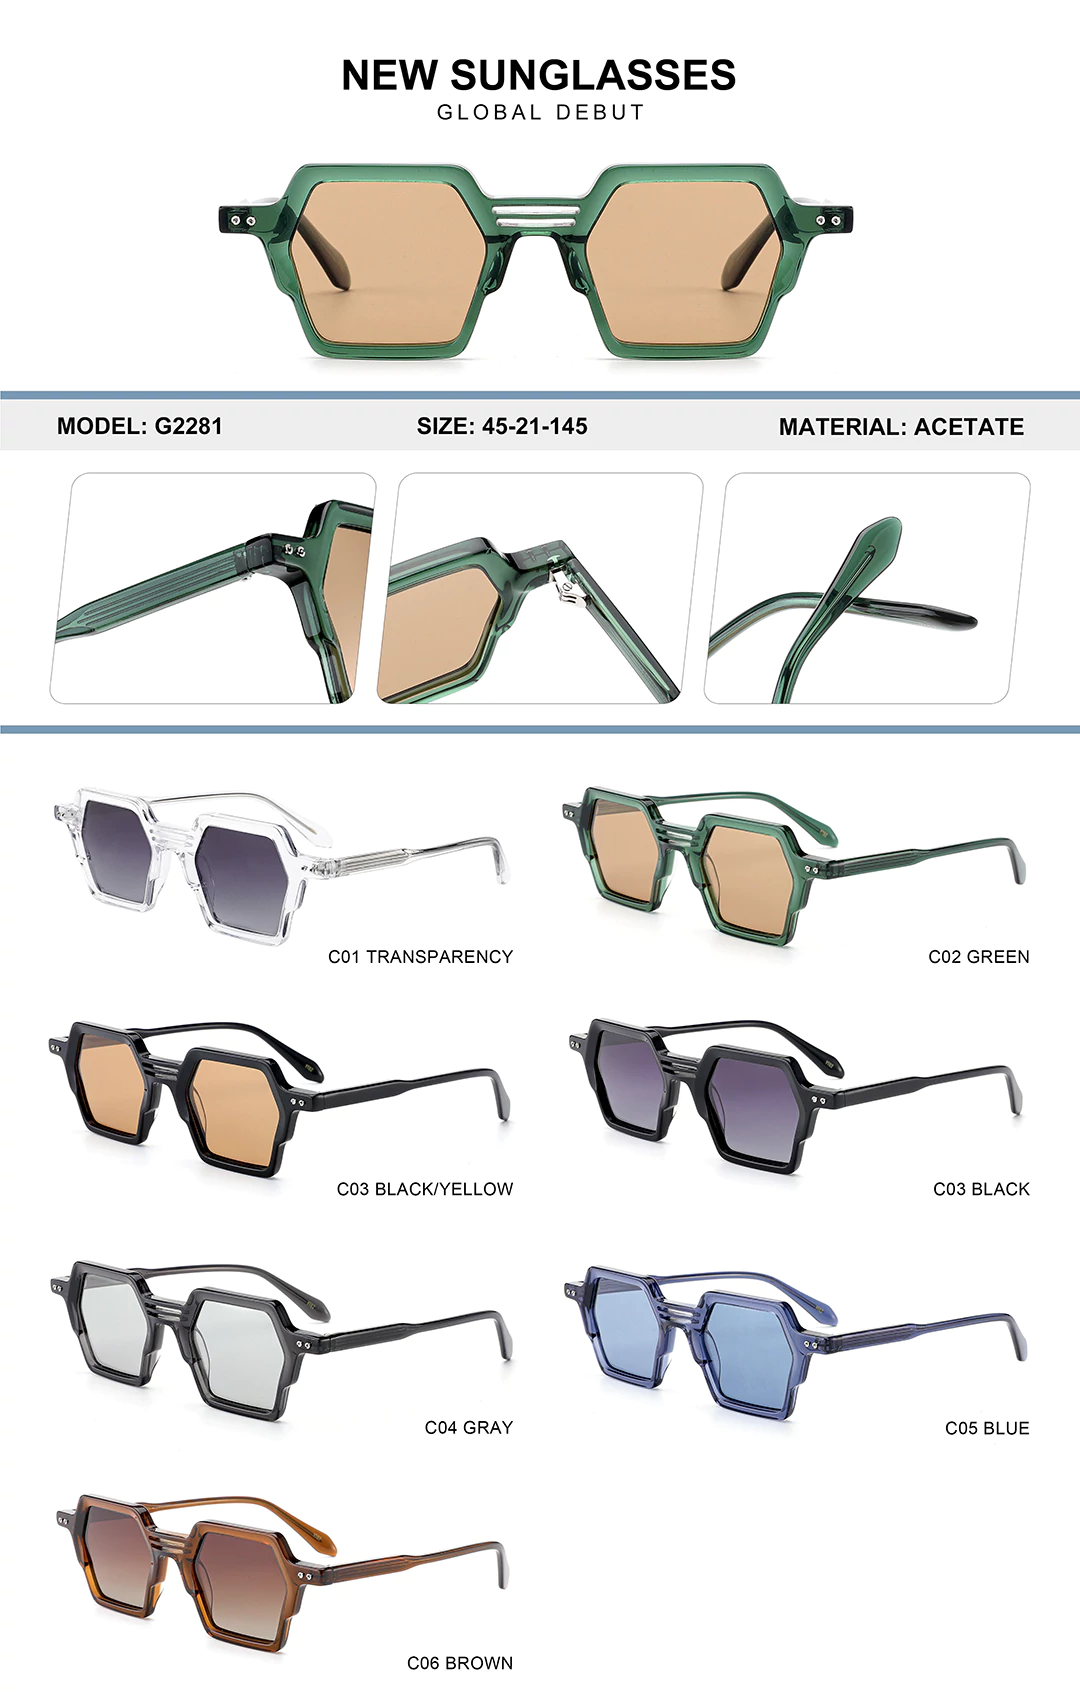 Kids Sunglasses G2281 Size, detail shots, different colors shown